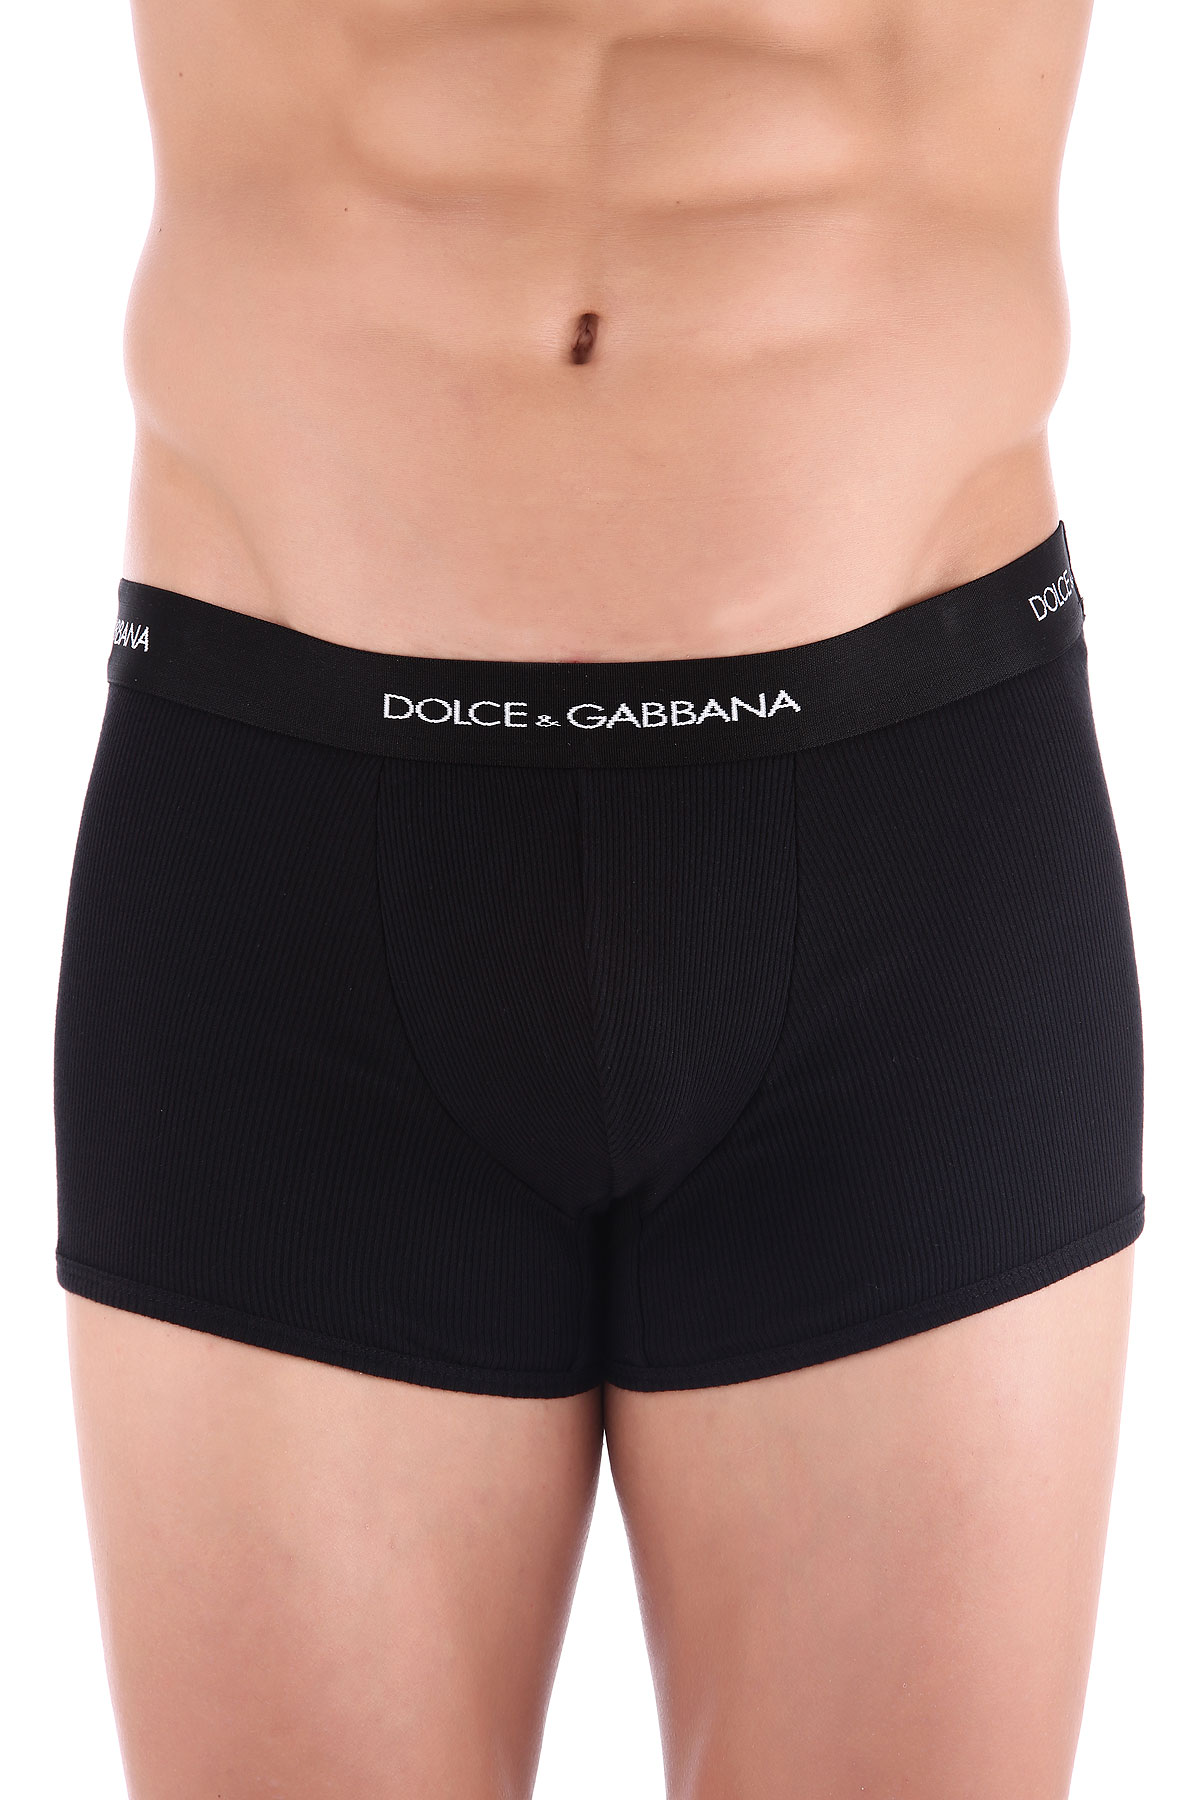 Dolce & Gabbana Caleçon Boxer Homme, Boxer, Noir, Coton, 2017, L M S XL